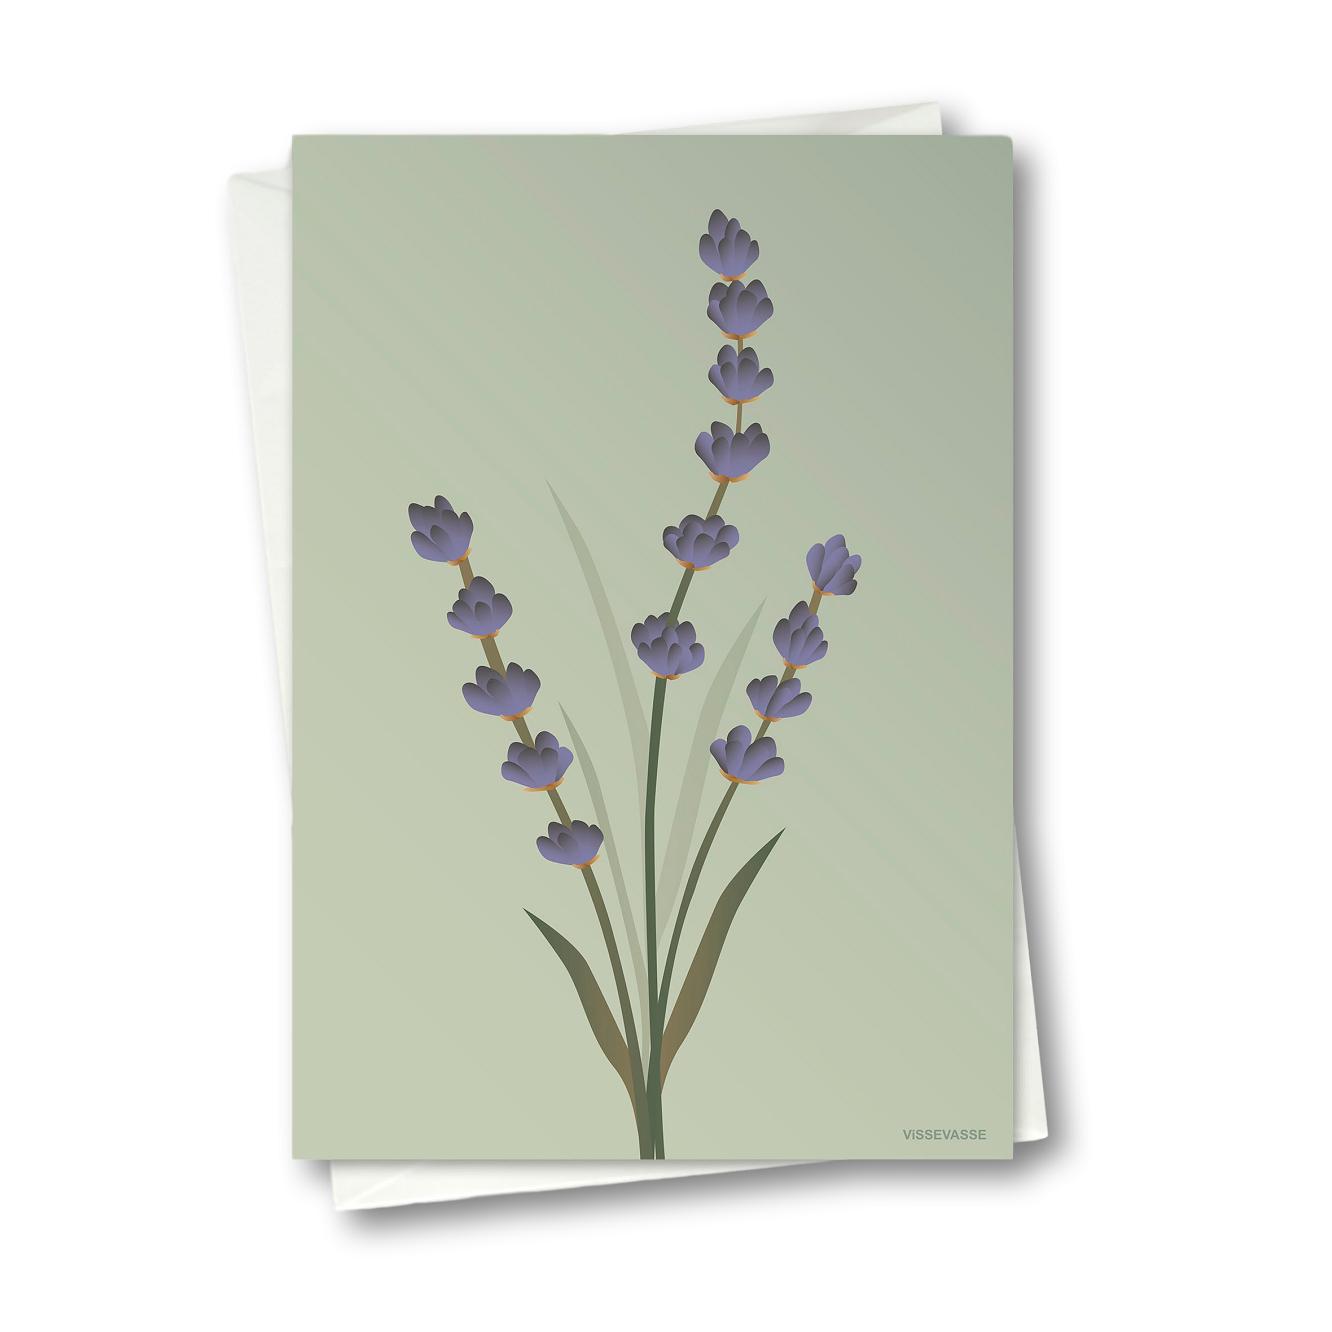 Vissevasse Lavendel Anledningskort, Grøn, 10.5X15 Cm-Kort-Vissevasse-5713138605201-F-2016-052-XS-VIS-Allbuy